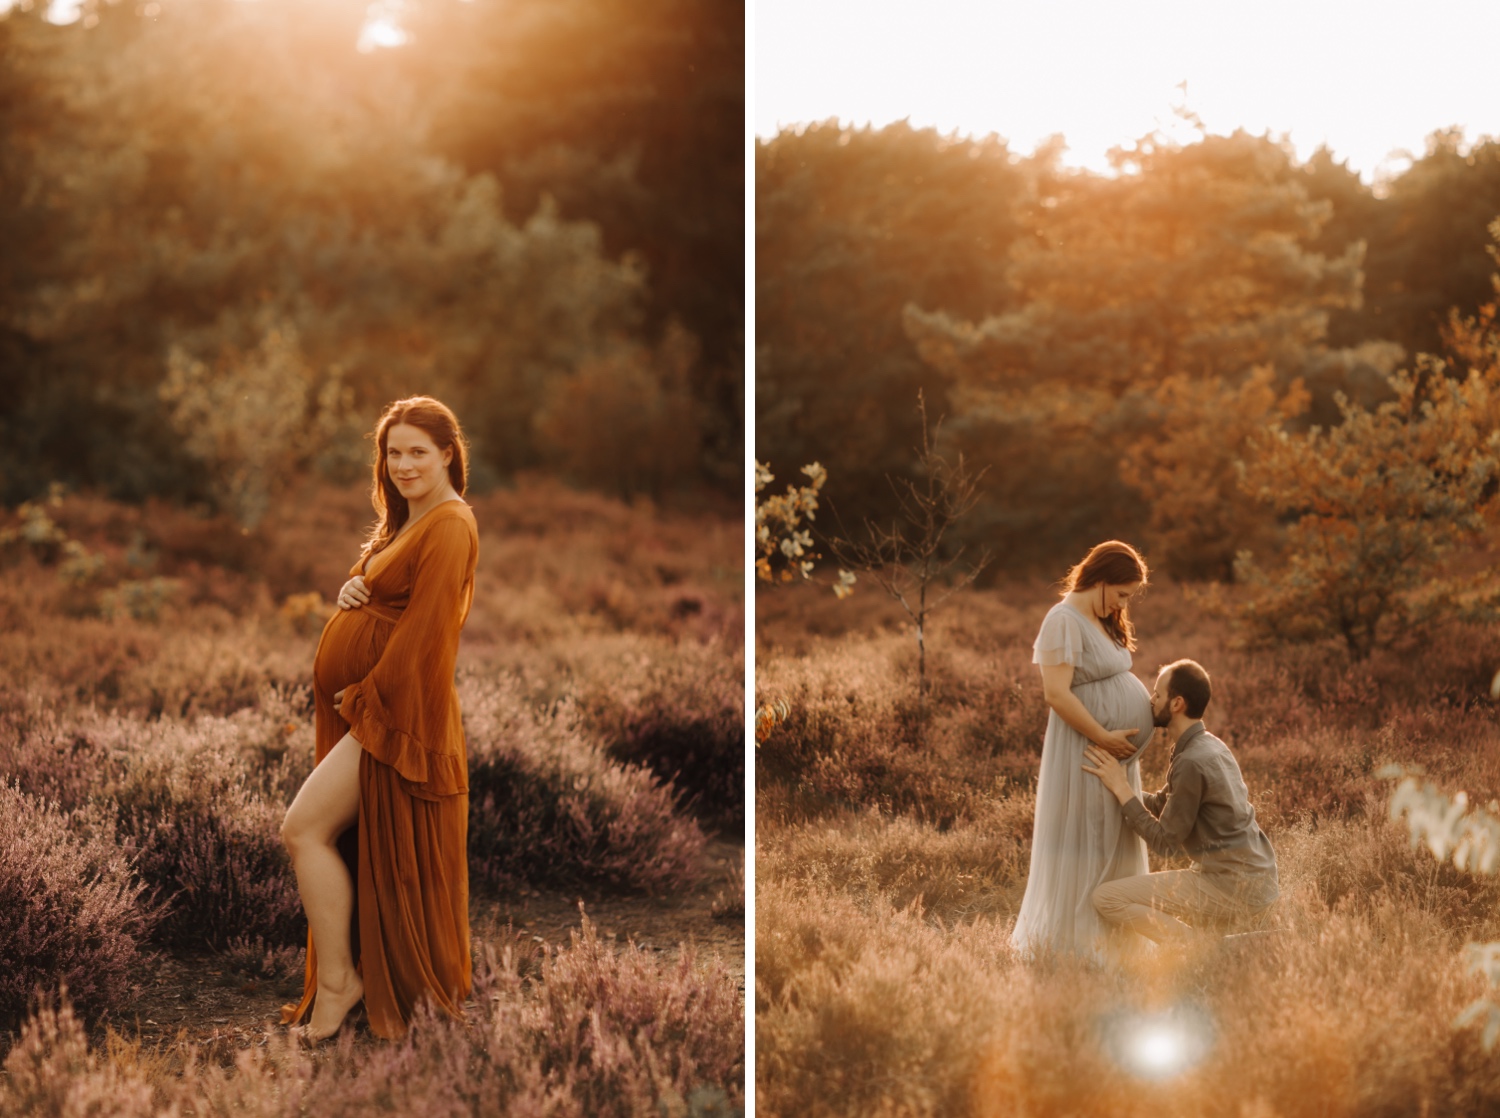 gezinsfotograaf Limburg - partner geeft een kus op de bolle buik tijdens zwangerschapsshoot in de heide